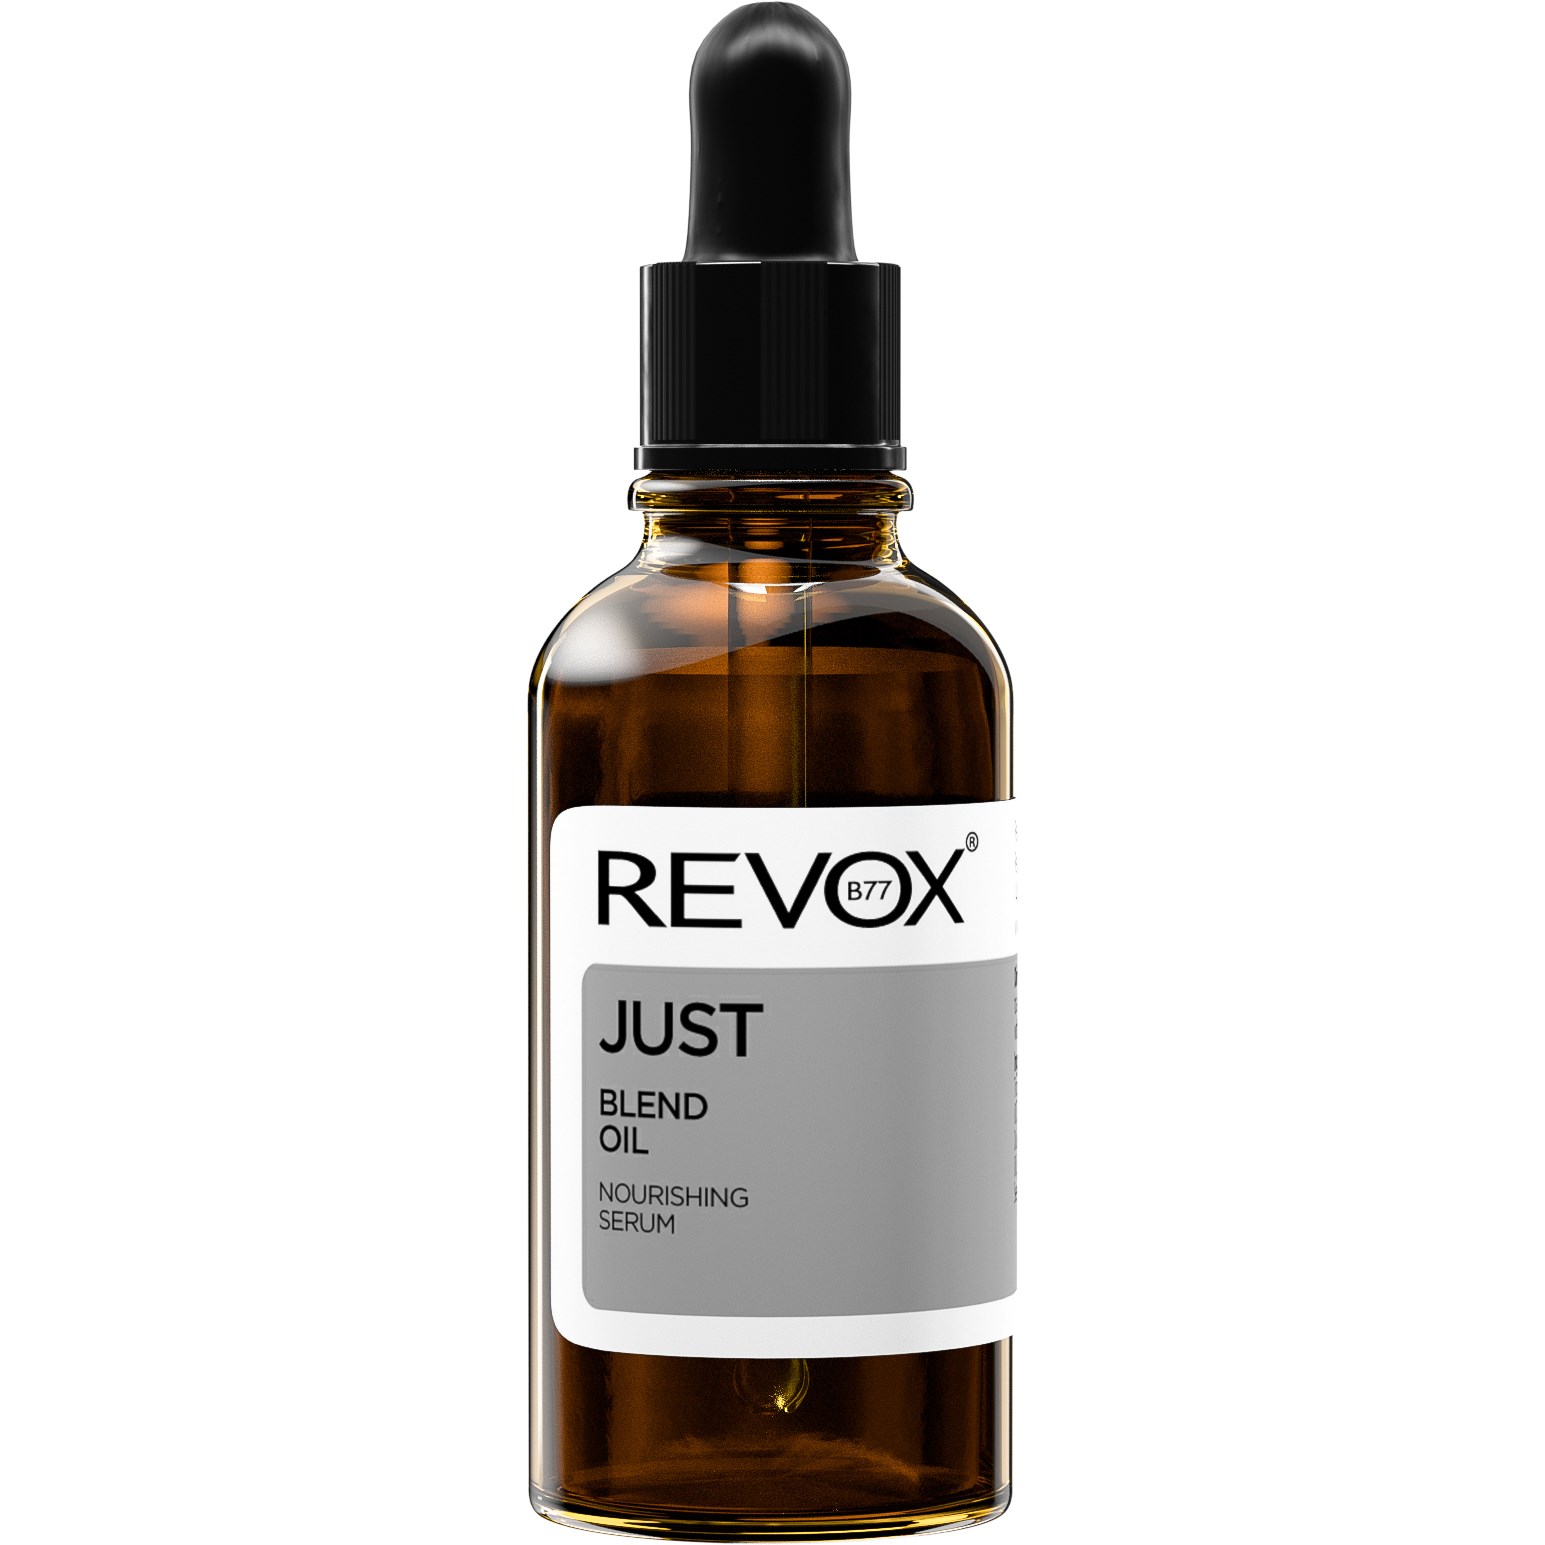 Läs mer om Revox JUST REVOX B77 Blend Oil DK 30 ml